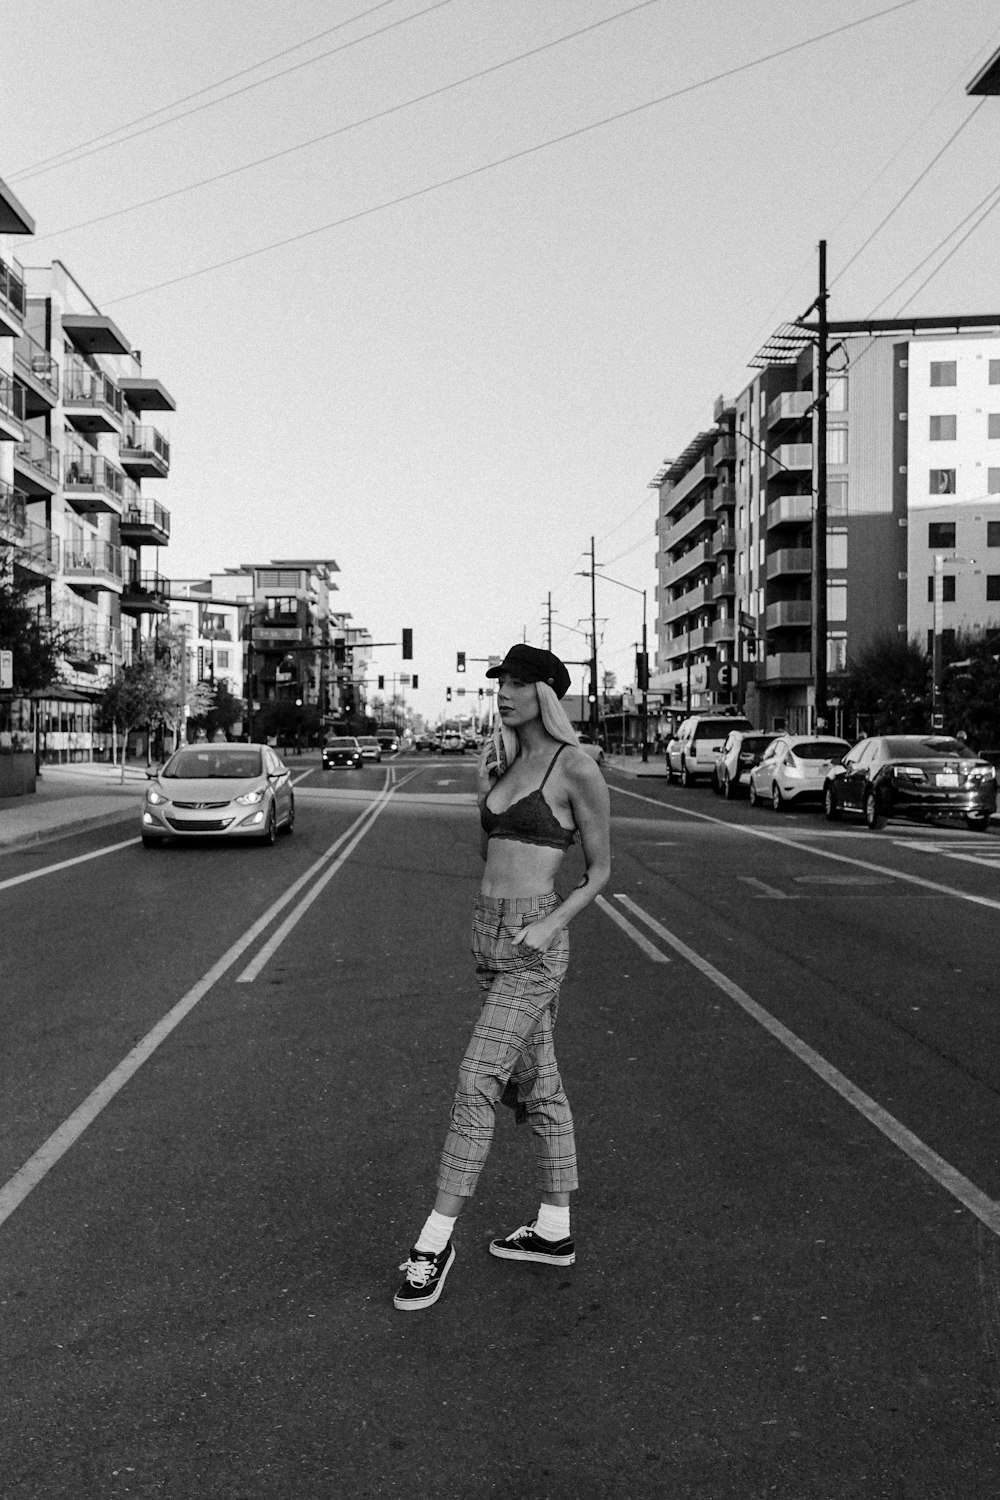 Photographie en niveaux de gris d’une femme debout sur la route